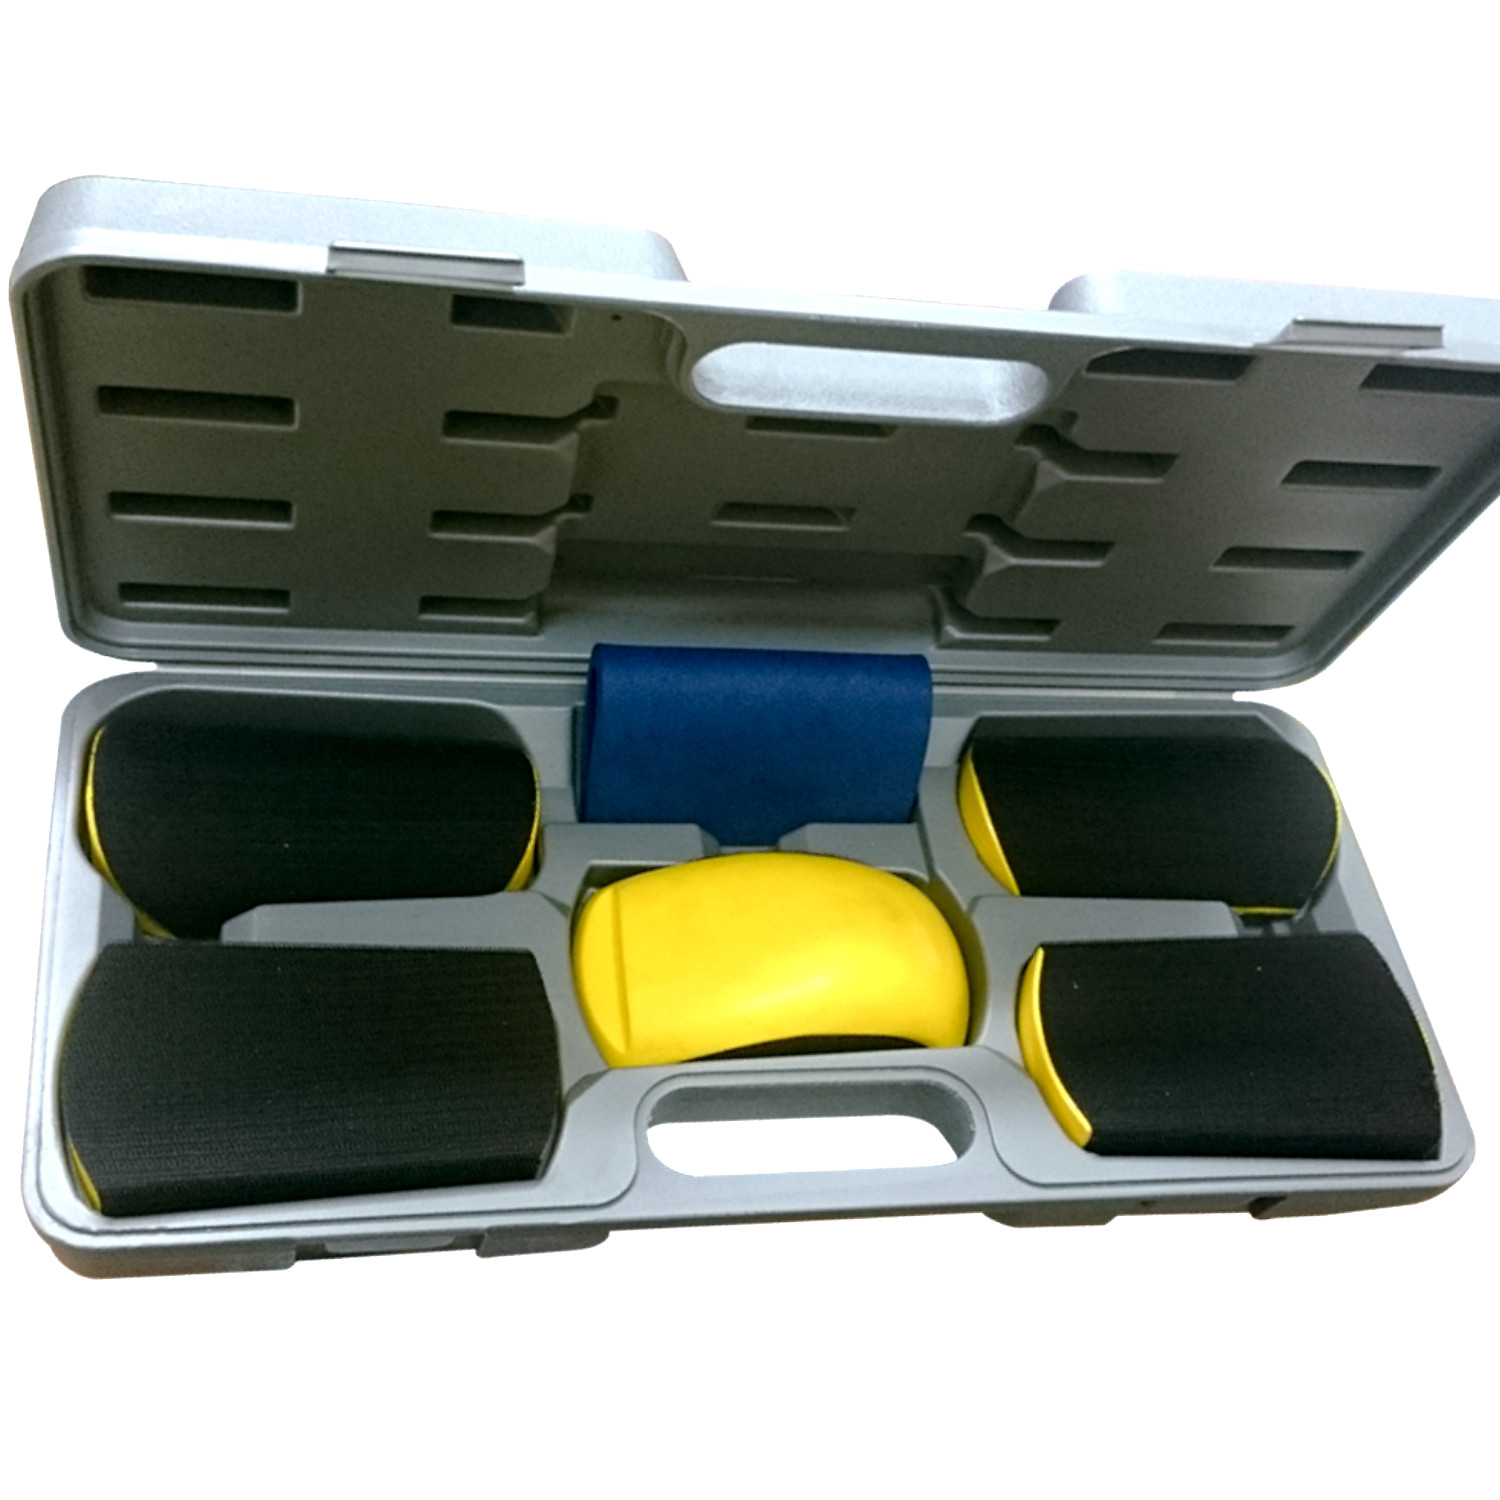 Kit escariadores / limpiadores de inyector 7 ud en maleta Orozco